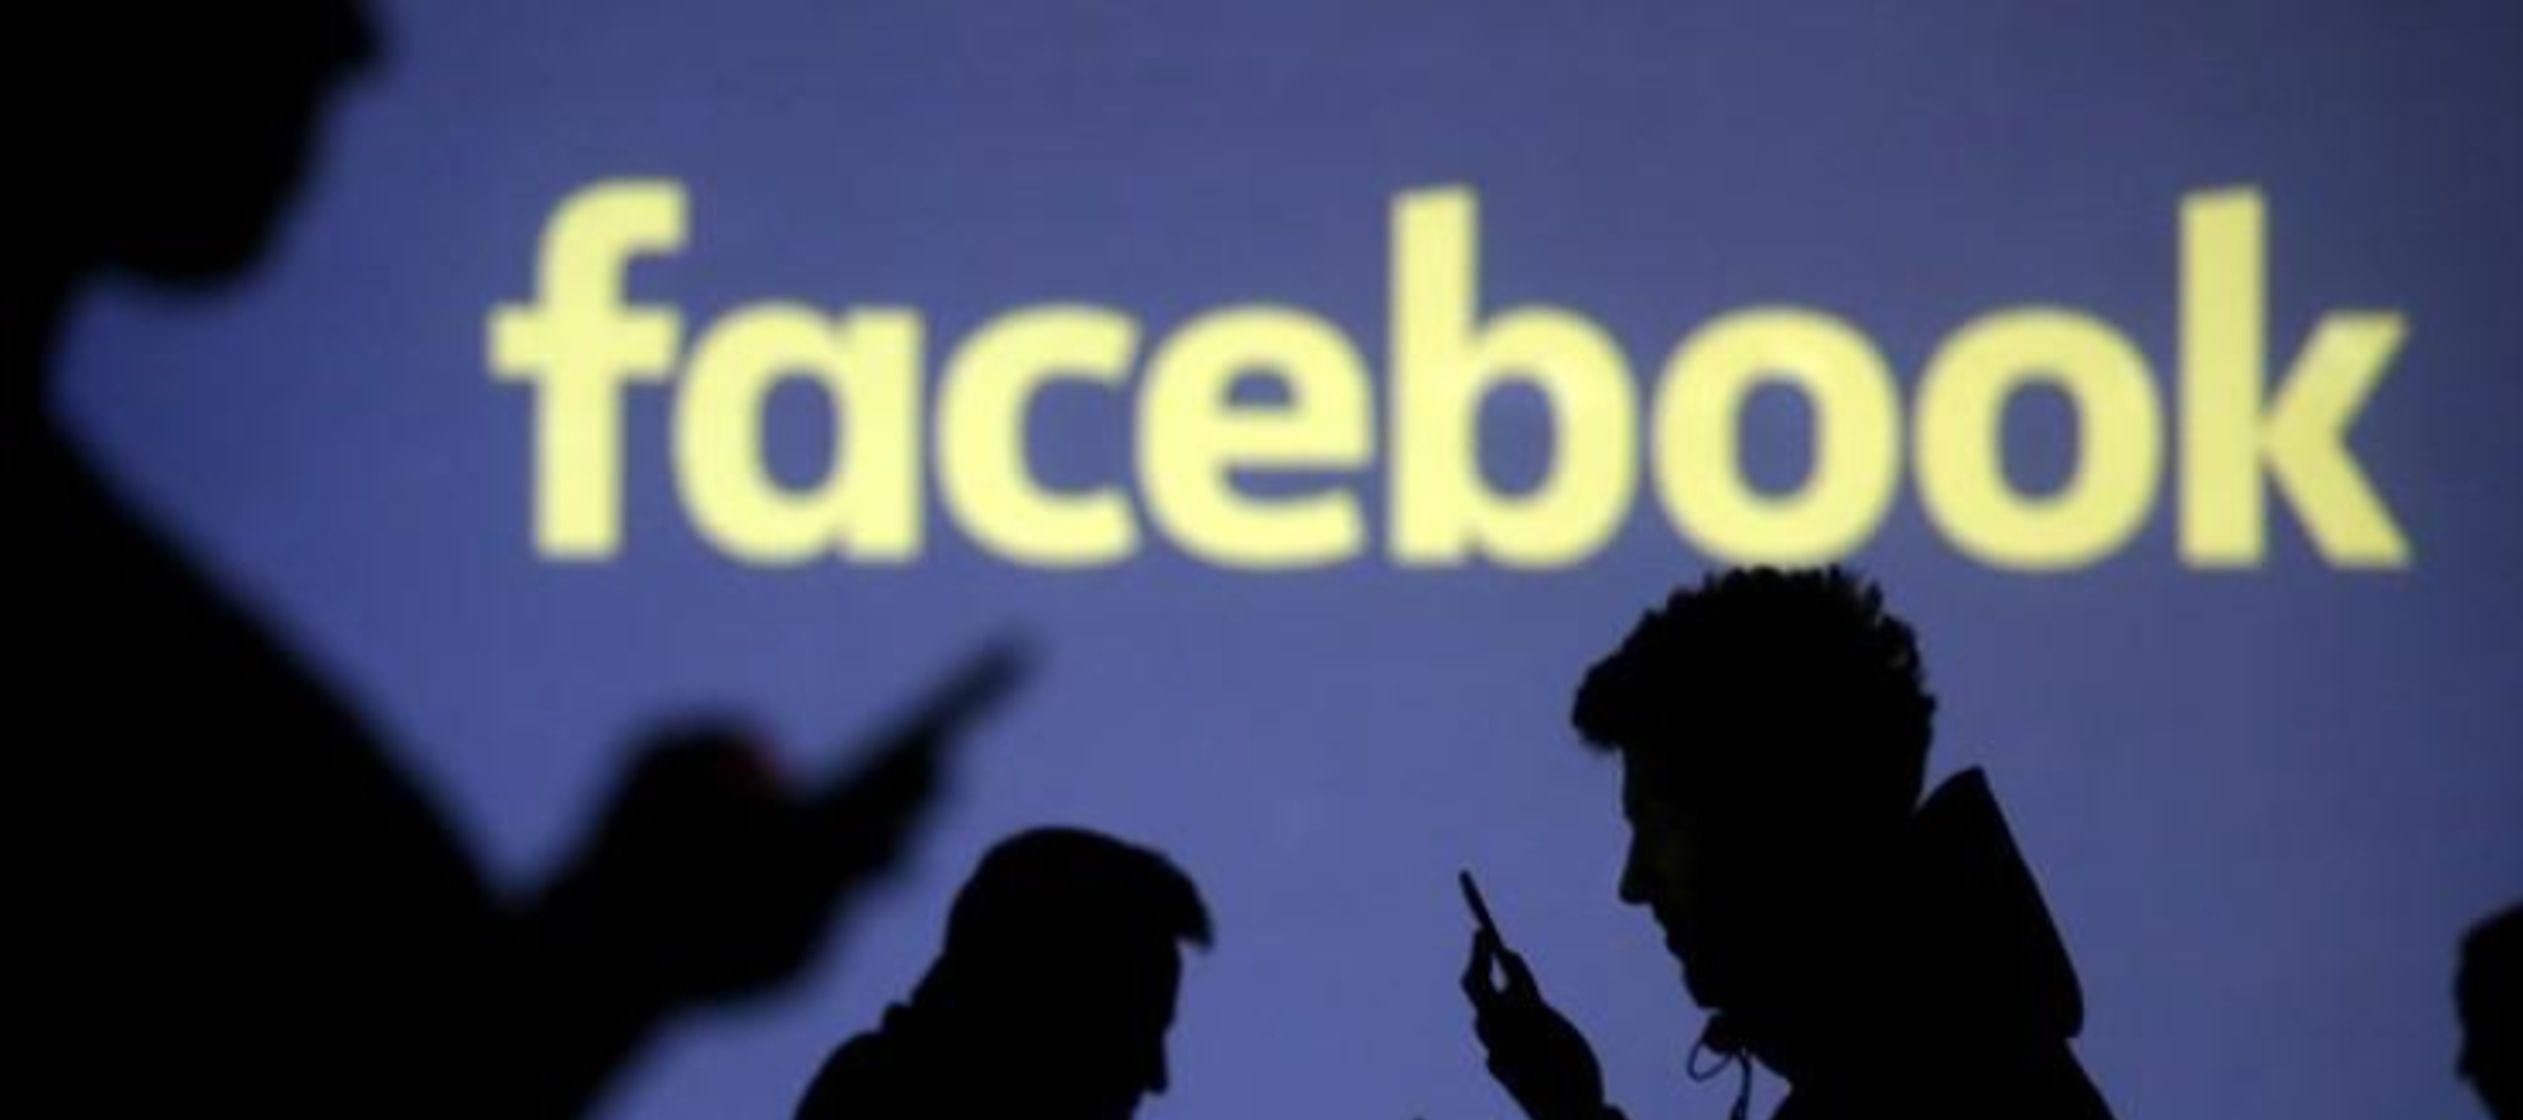 “Facebook falló en proteger la privacidad de sus usuarios y los engañó...